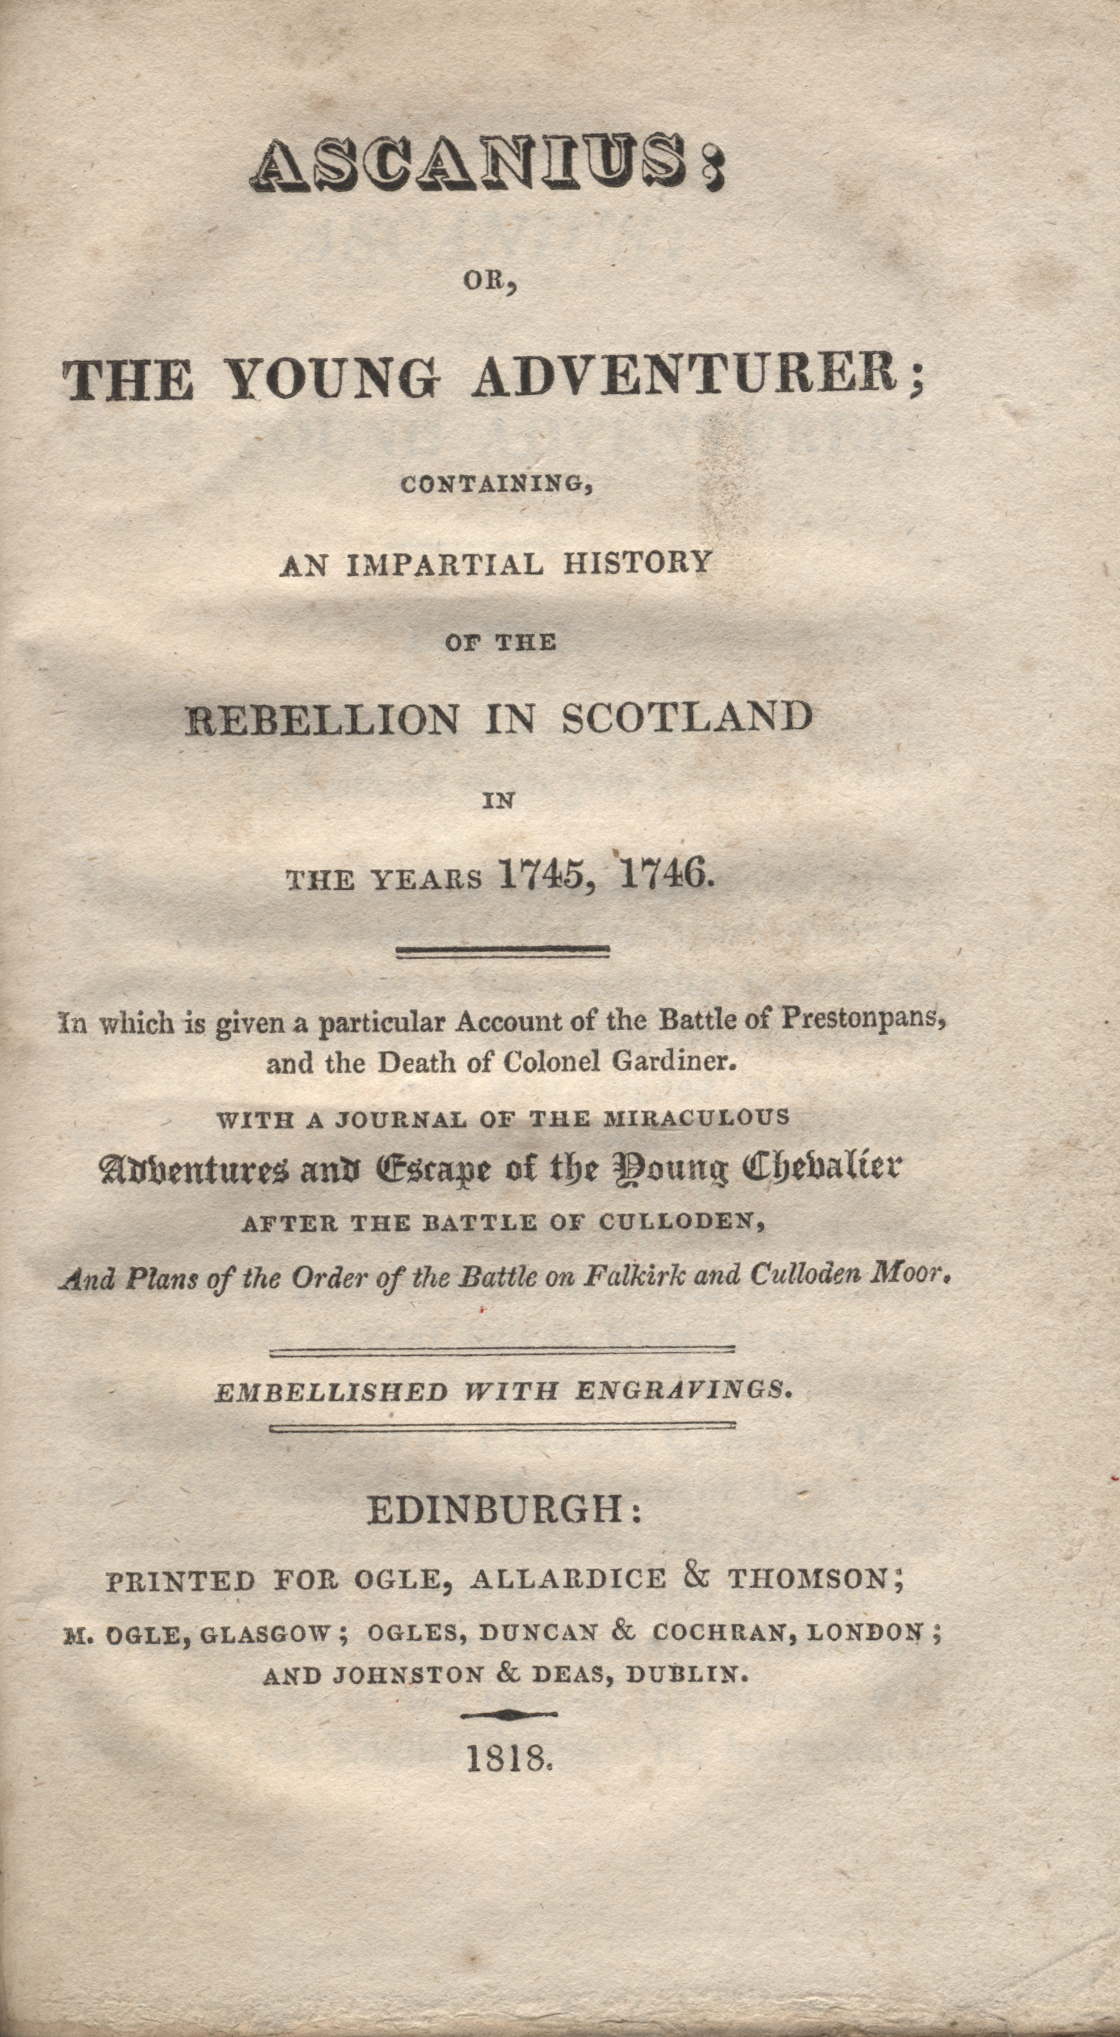 Ogle, Allardice, and Thomson 1818